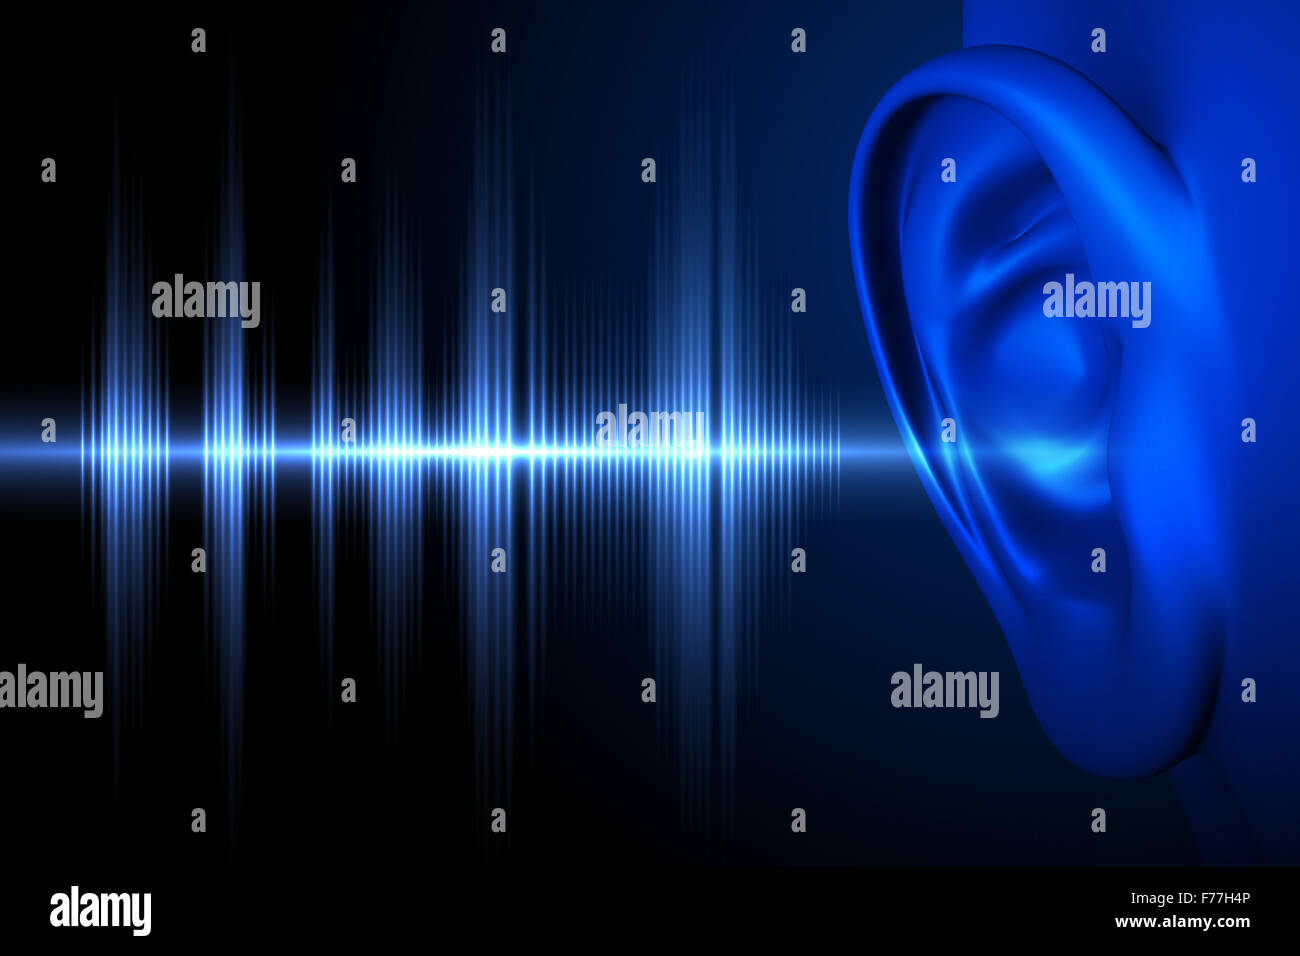 Immagine concettuale sull'udito umano Foto Stock